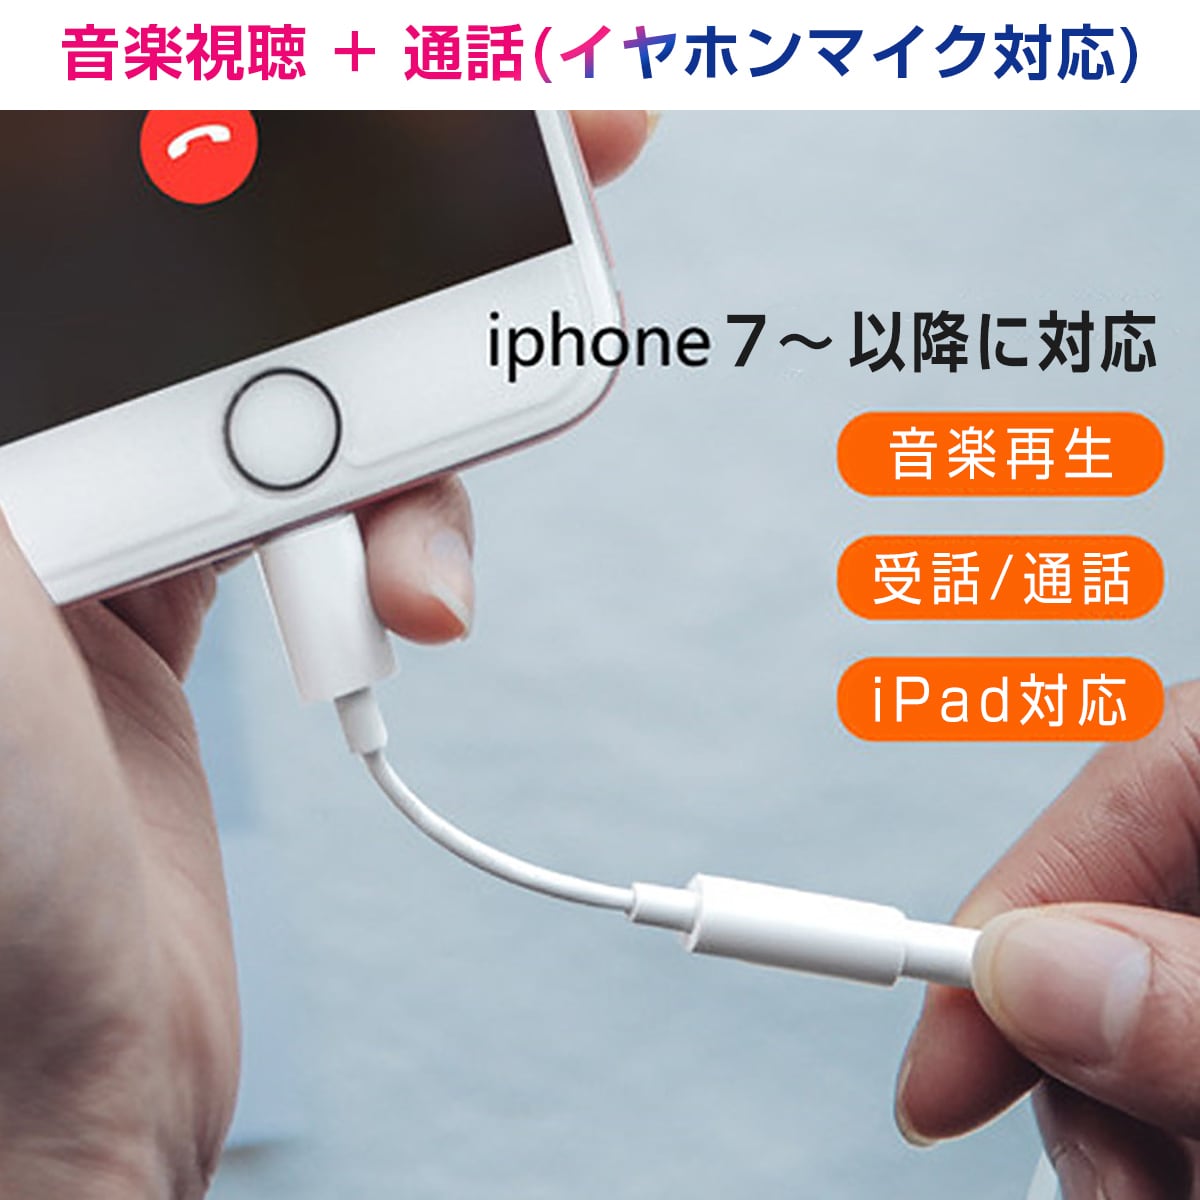 お得クーポン発行中 iPhone イヤホン 変換アダプタ ライトニング ケーブル スマホ 3.5mm